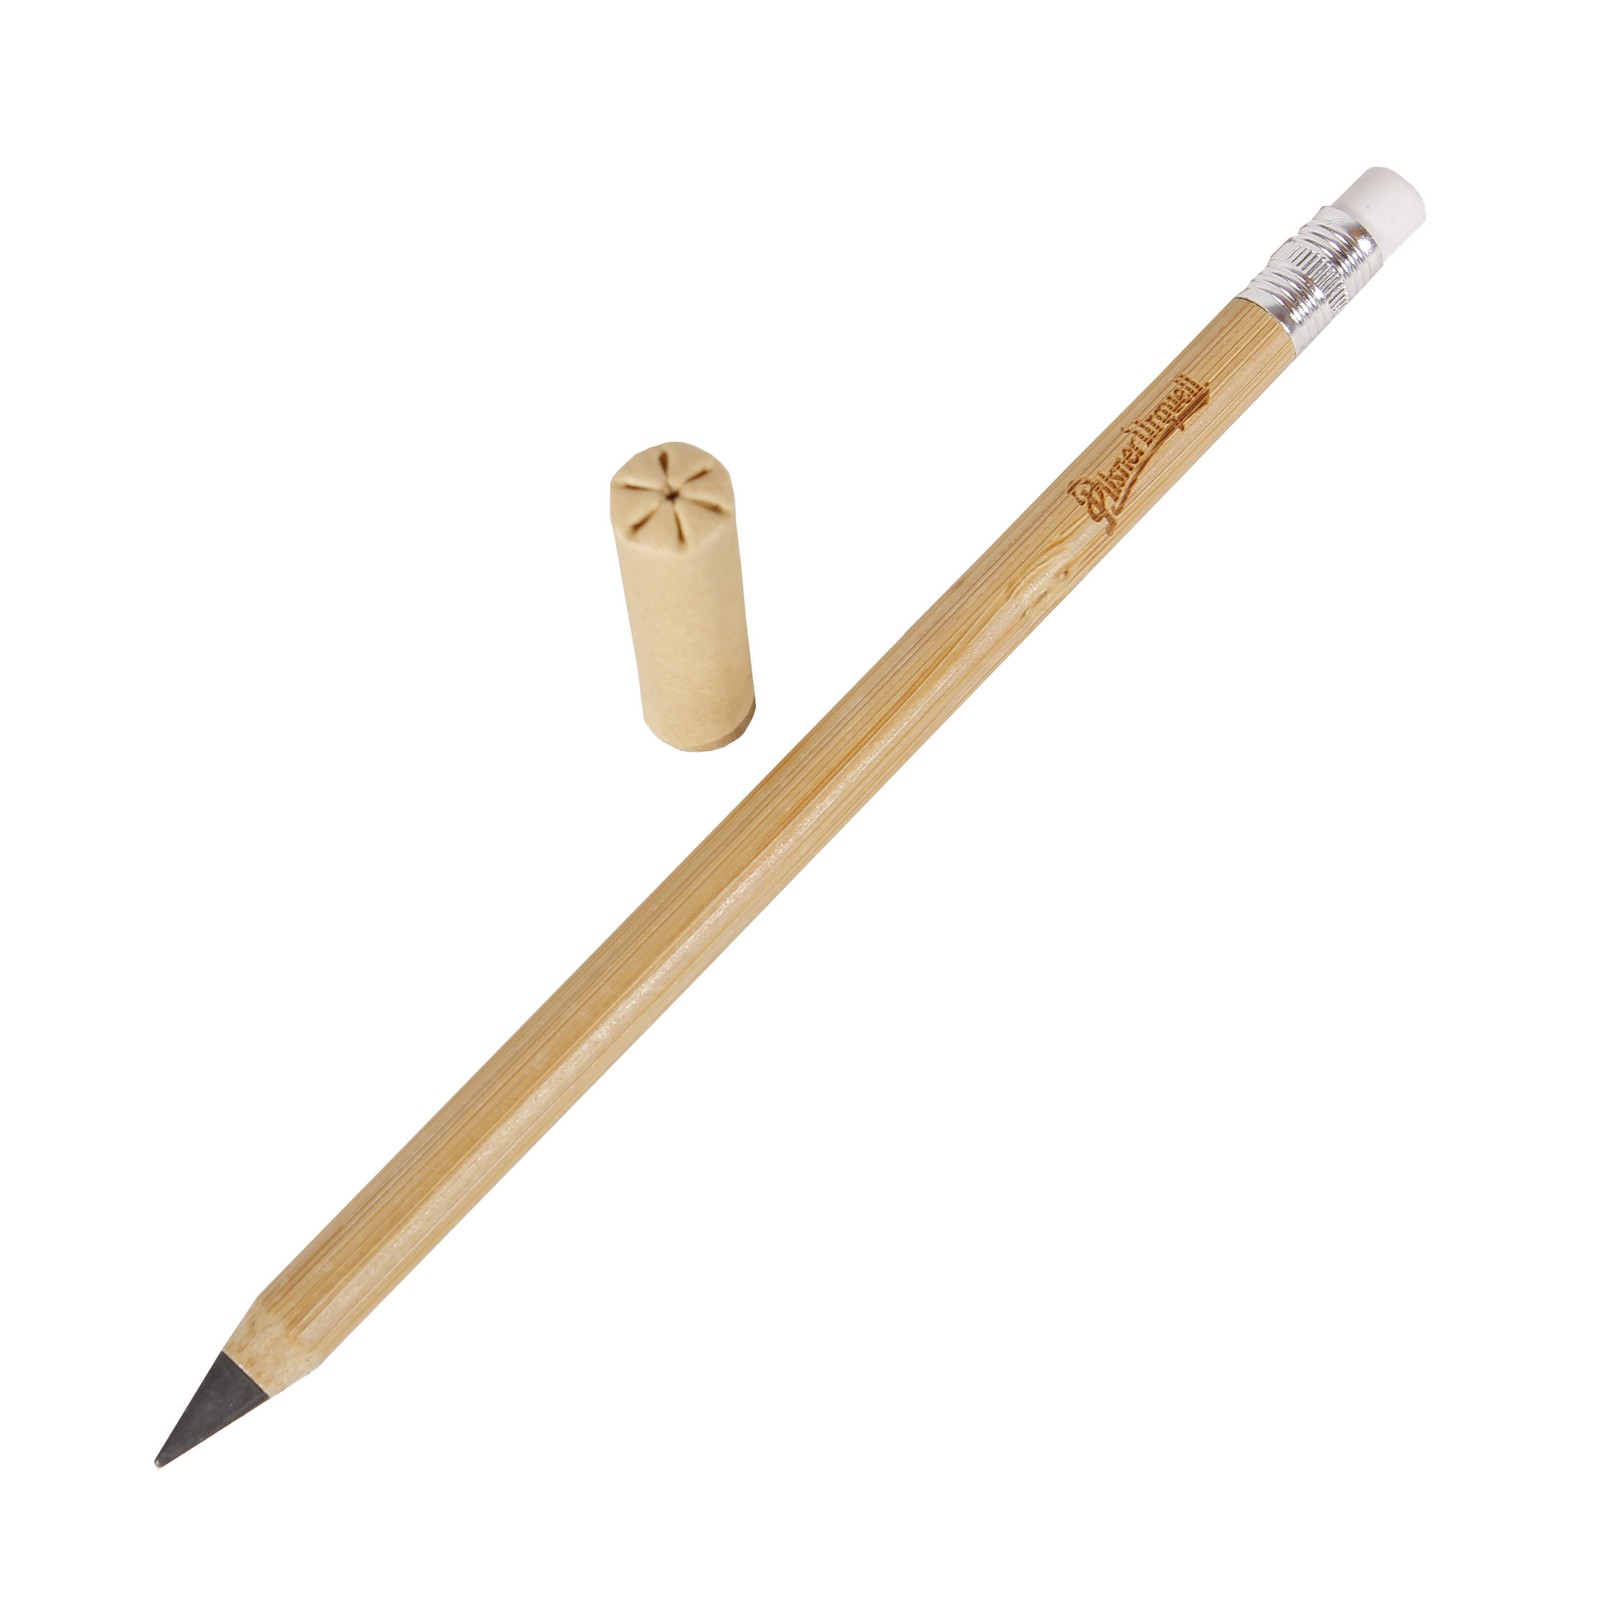 Pilsner Urquell bamboo pencil